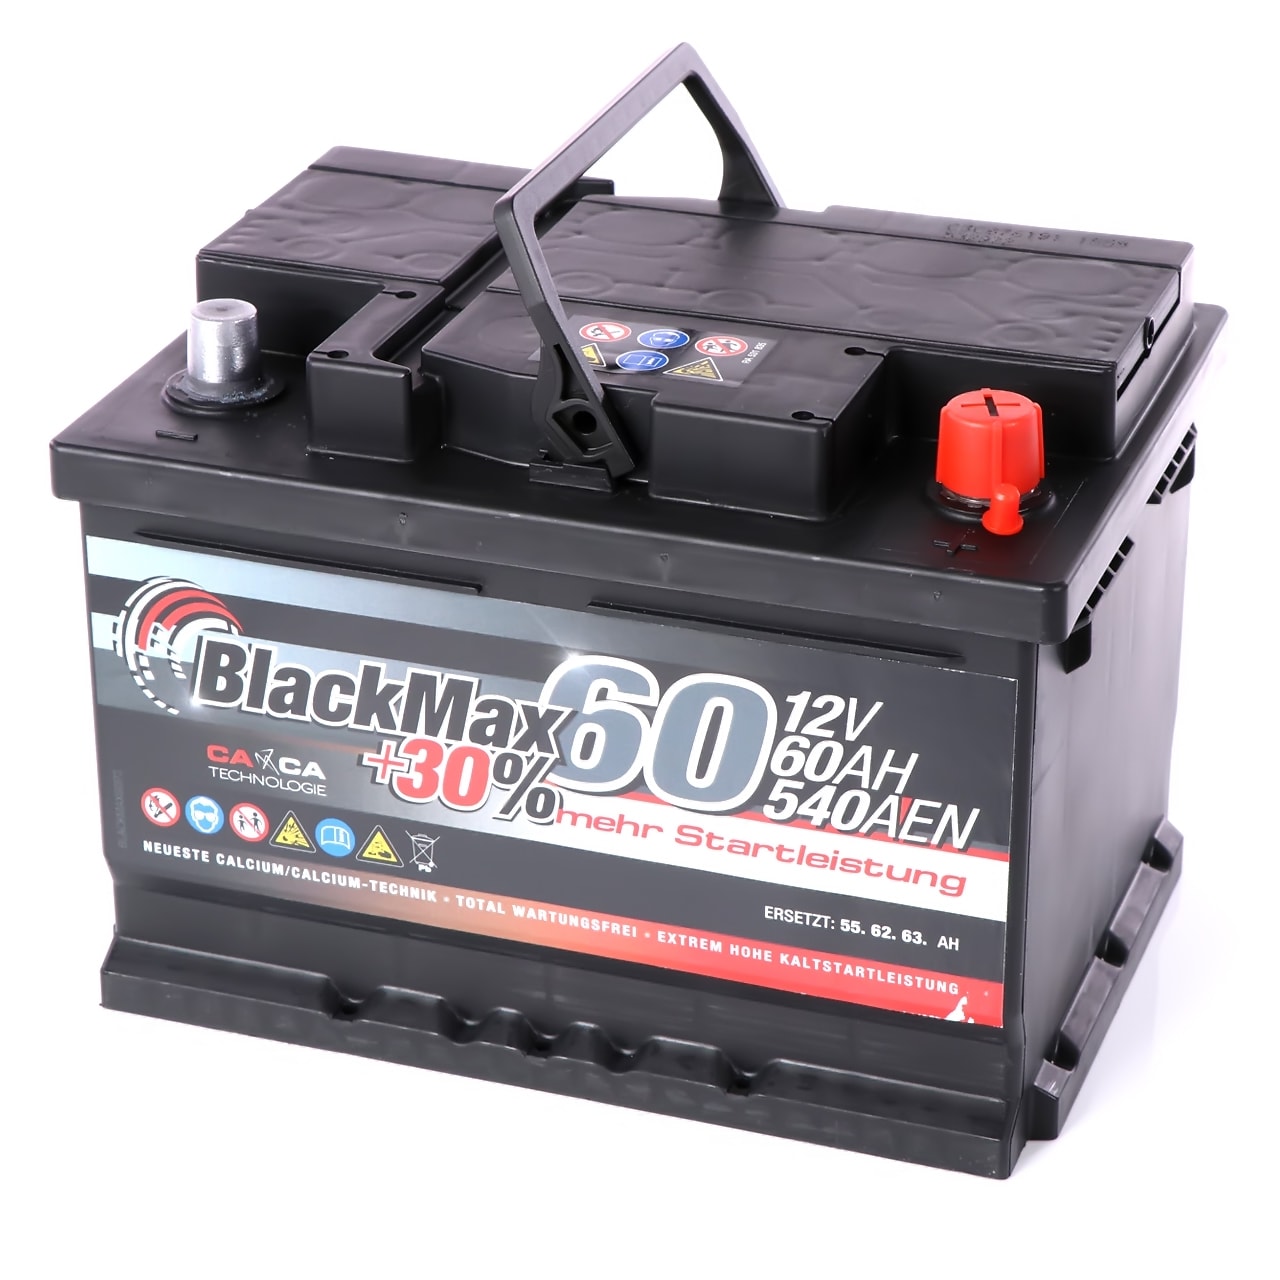 BlackMax +30 Autobatterie 12V 60Ah 540A